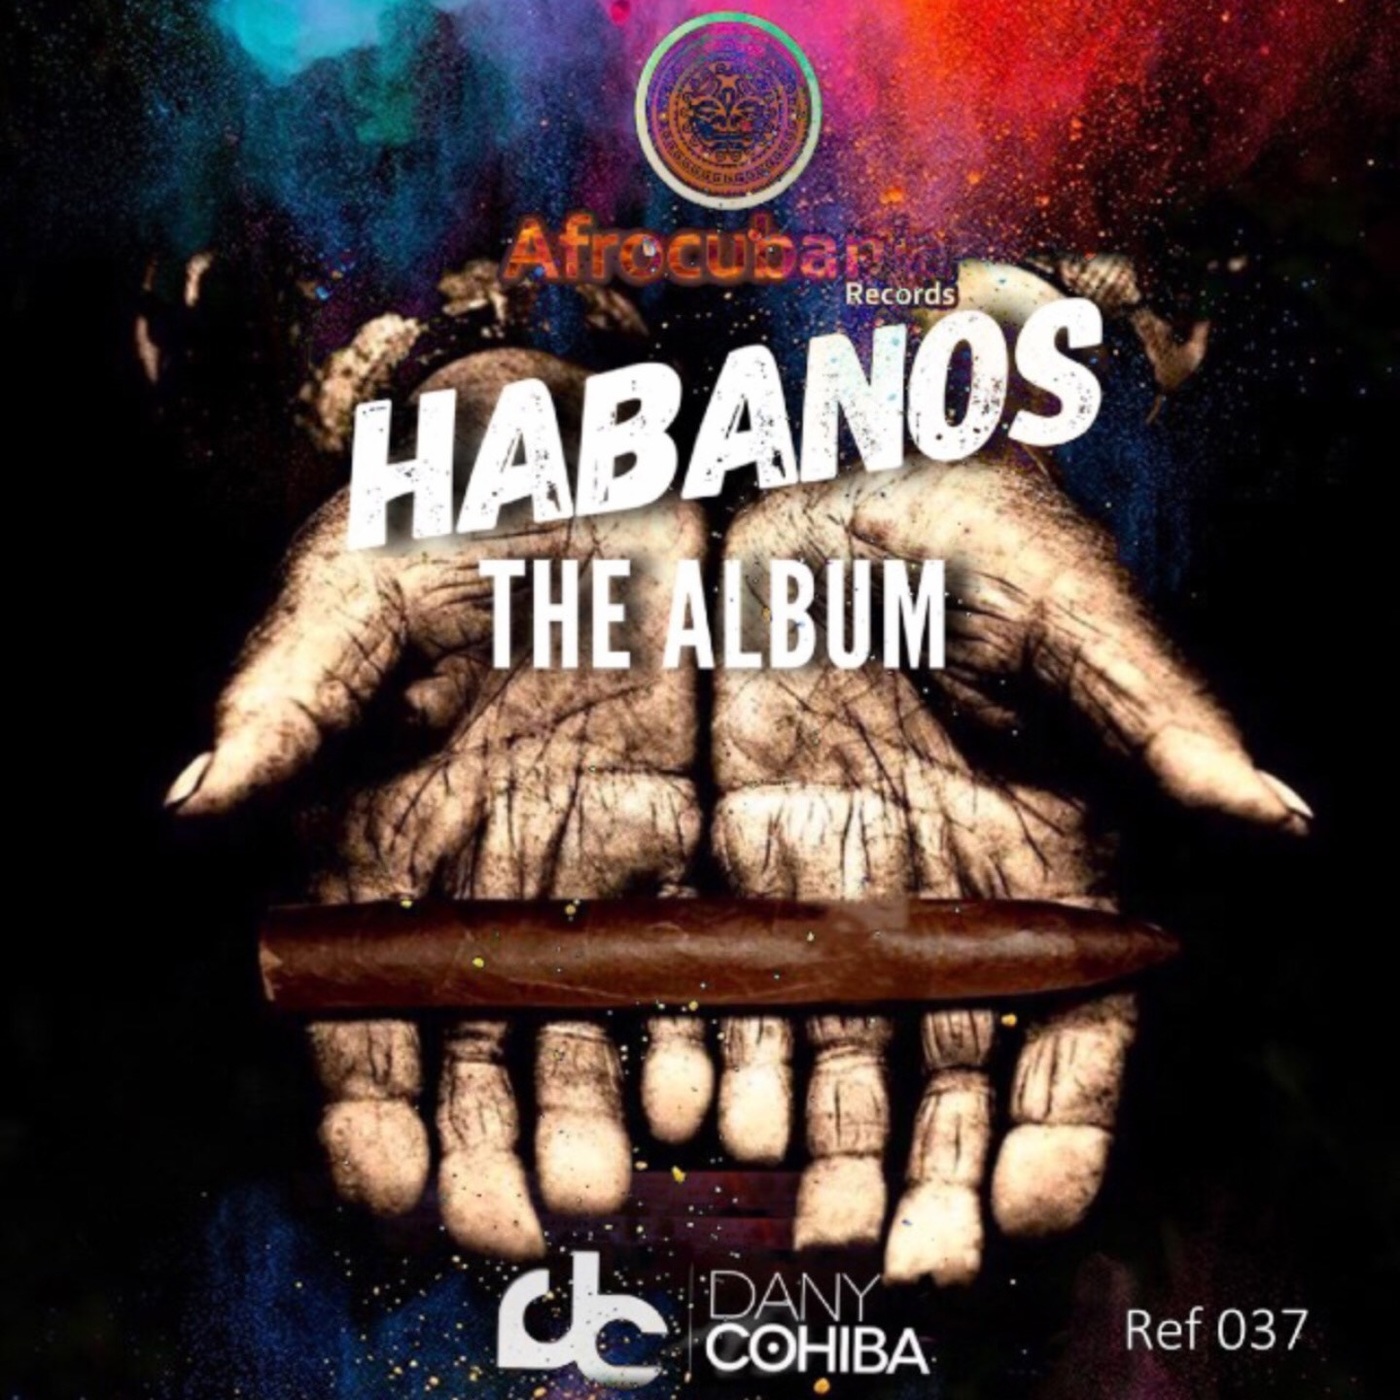 Dany Cohiba - Habanos / Afrocubania Records